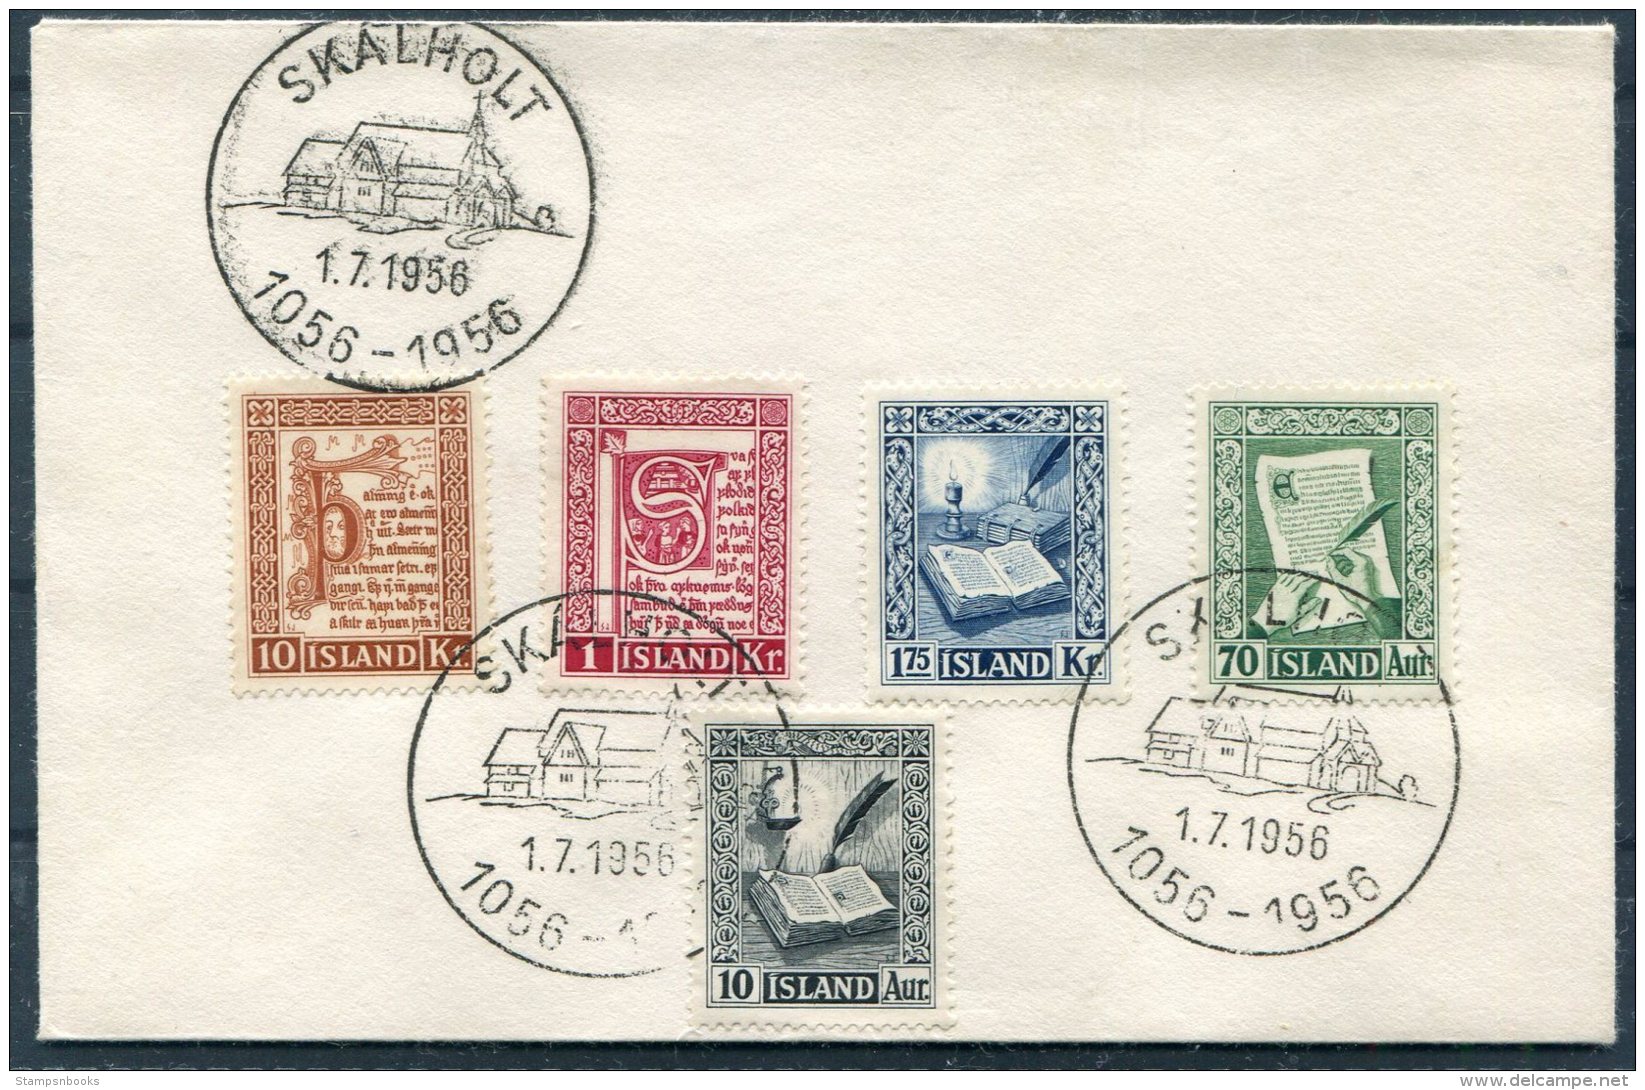 1956 Iceland Manuscripts Set On Skalholt Cover - Storia Postale